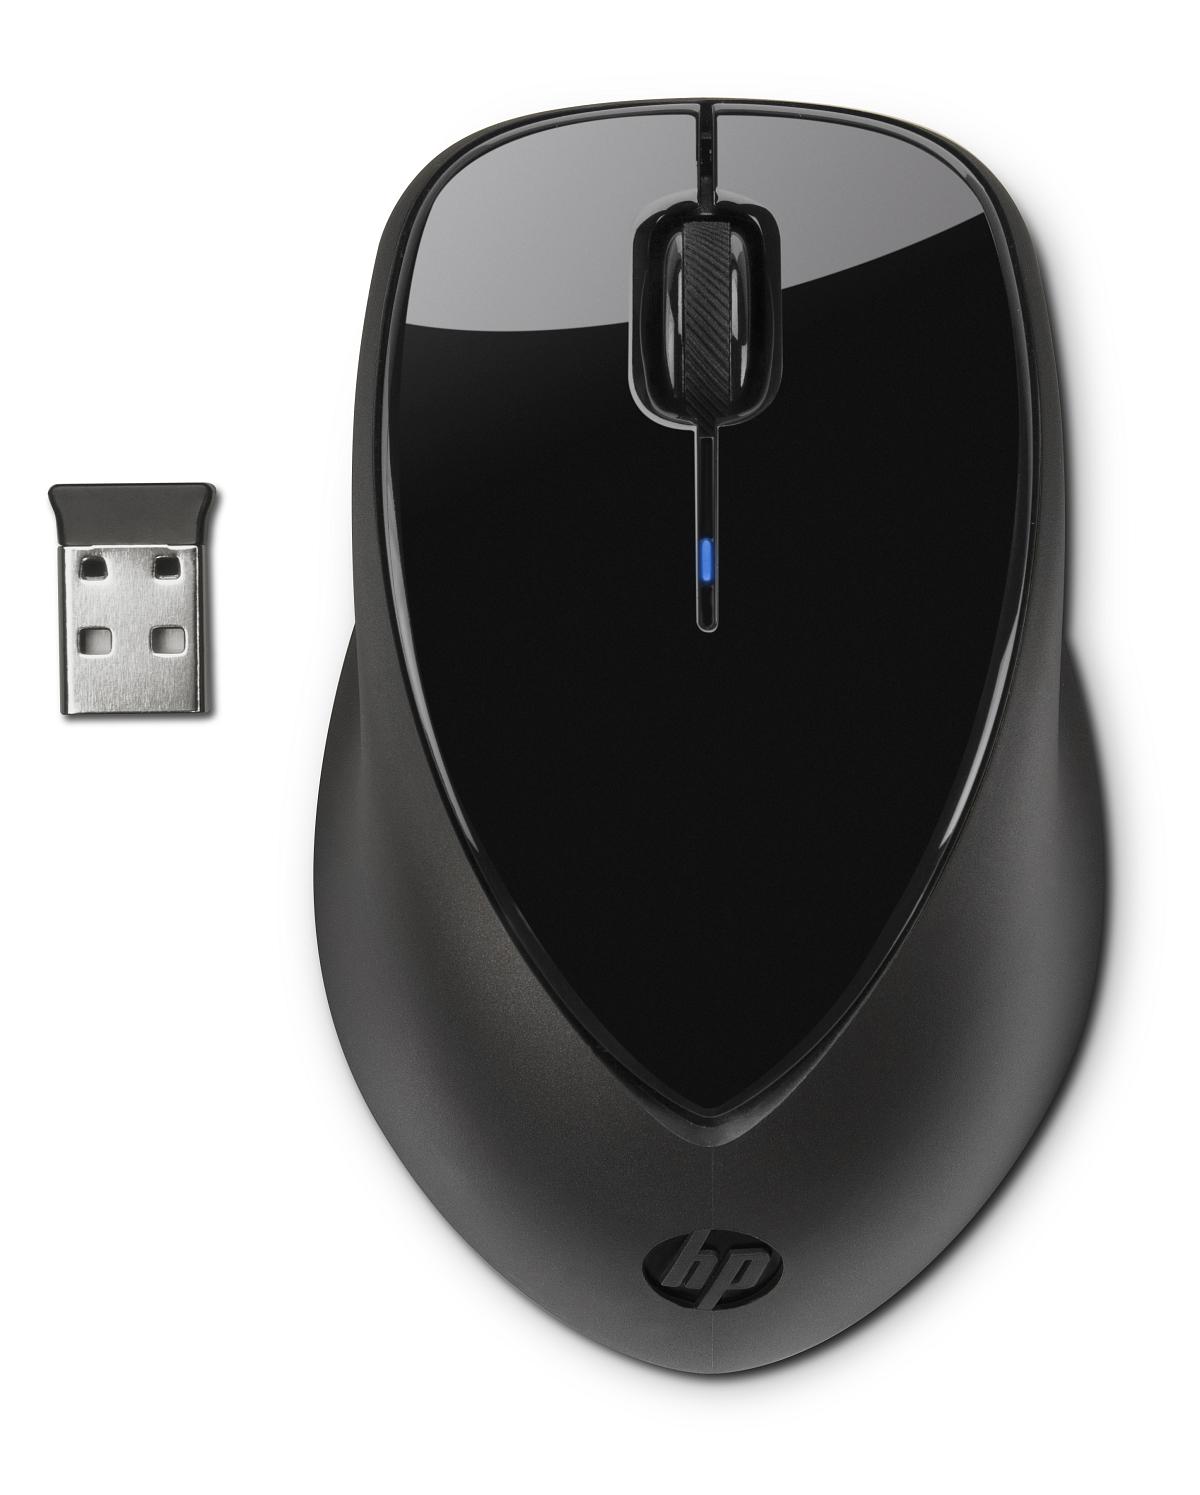 Bezdrátová myš HP x4000 - černá (A0X35AA)